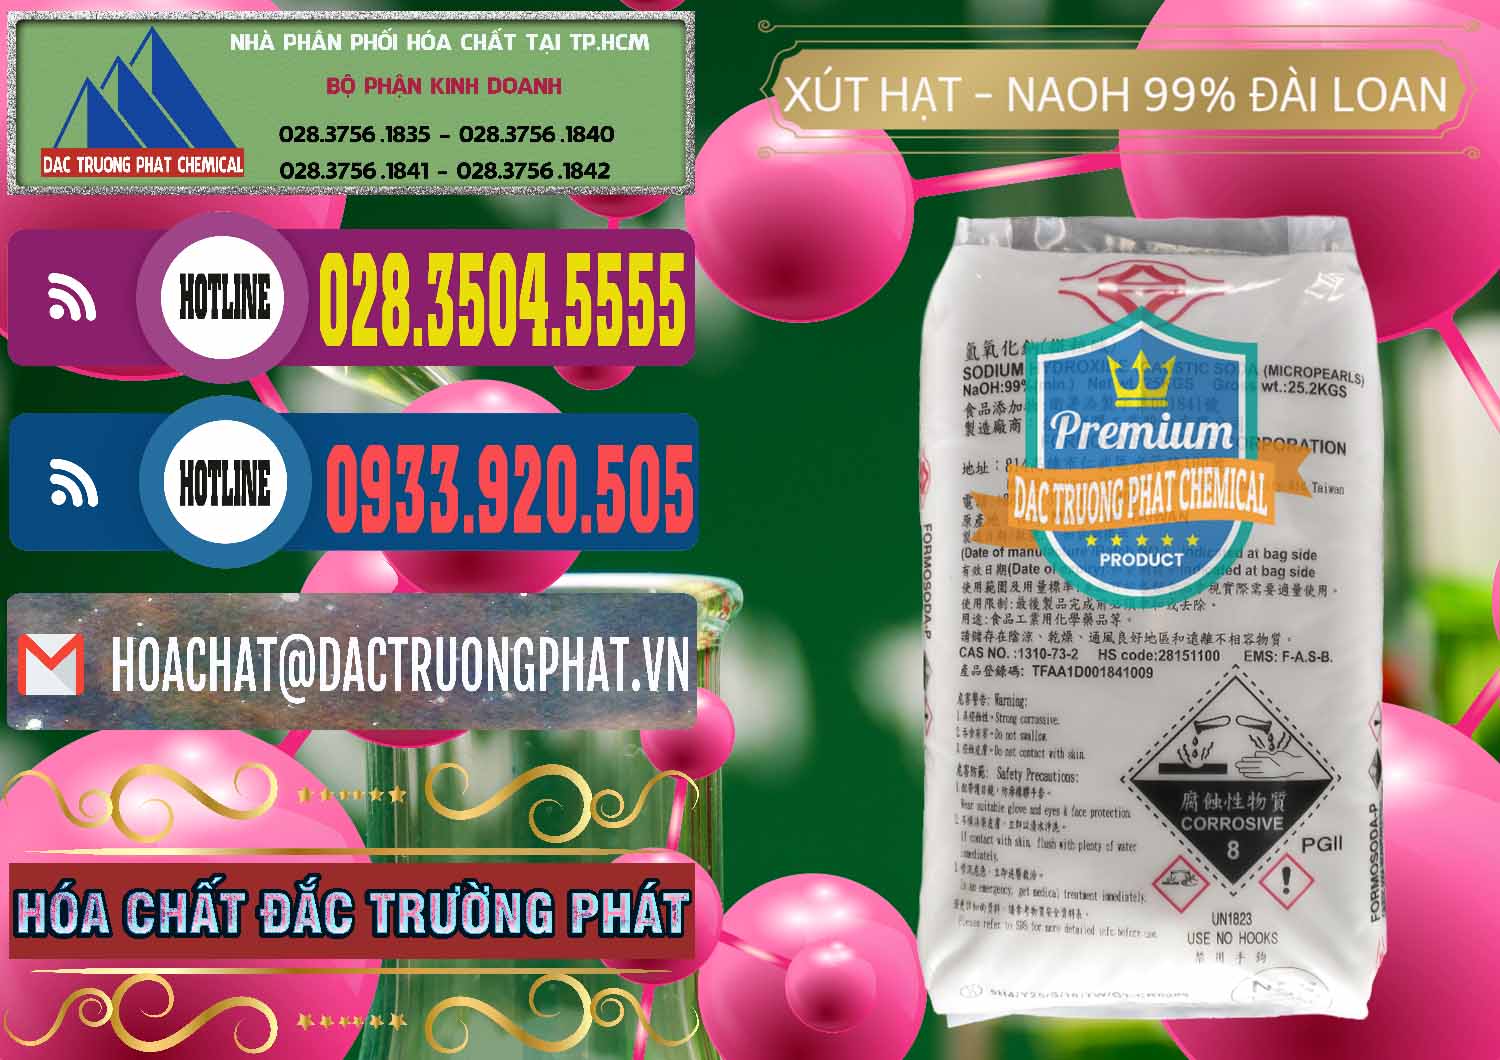 Đơn vị bán & phân phối Xút Hạt - NaOH Bột 99% Đài Loan Taiwan Formosa - 0167 - Cty chuyên bán và cung cấp hóa chất tại TP.HCM - muabanhoachat.com.vn